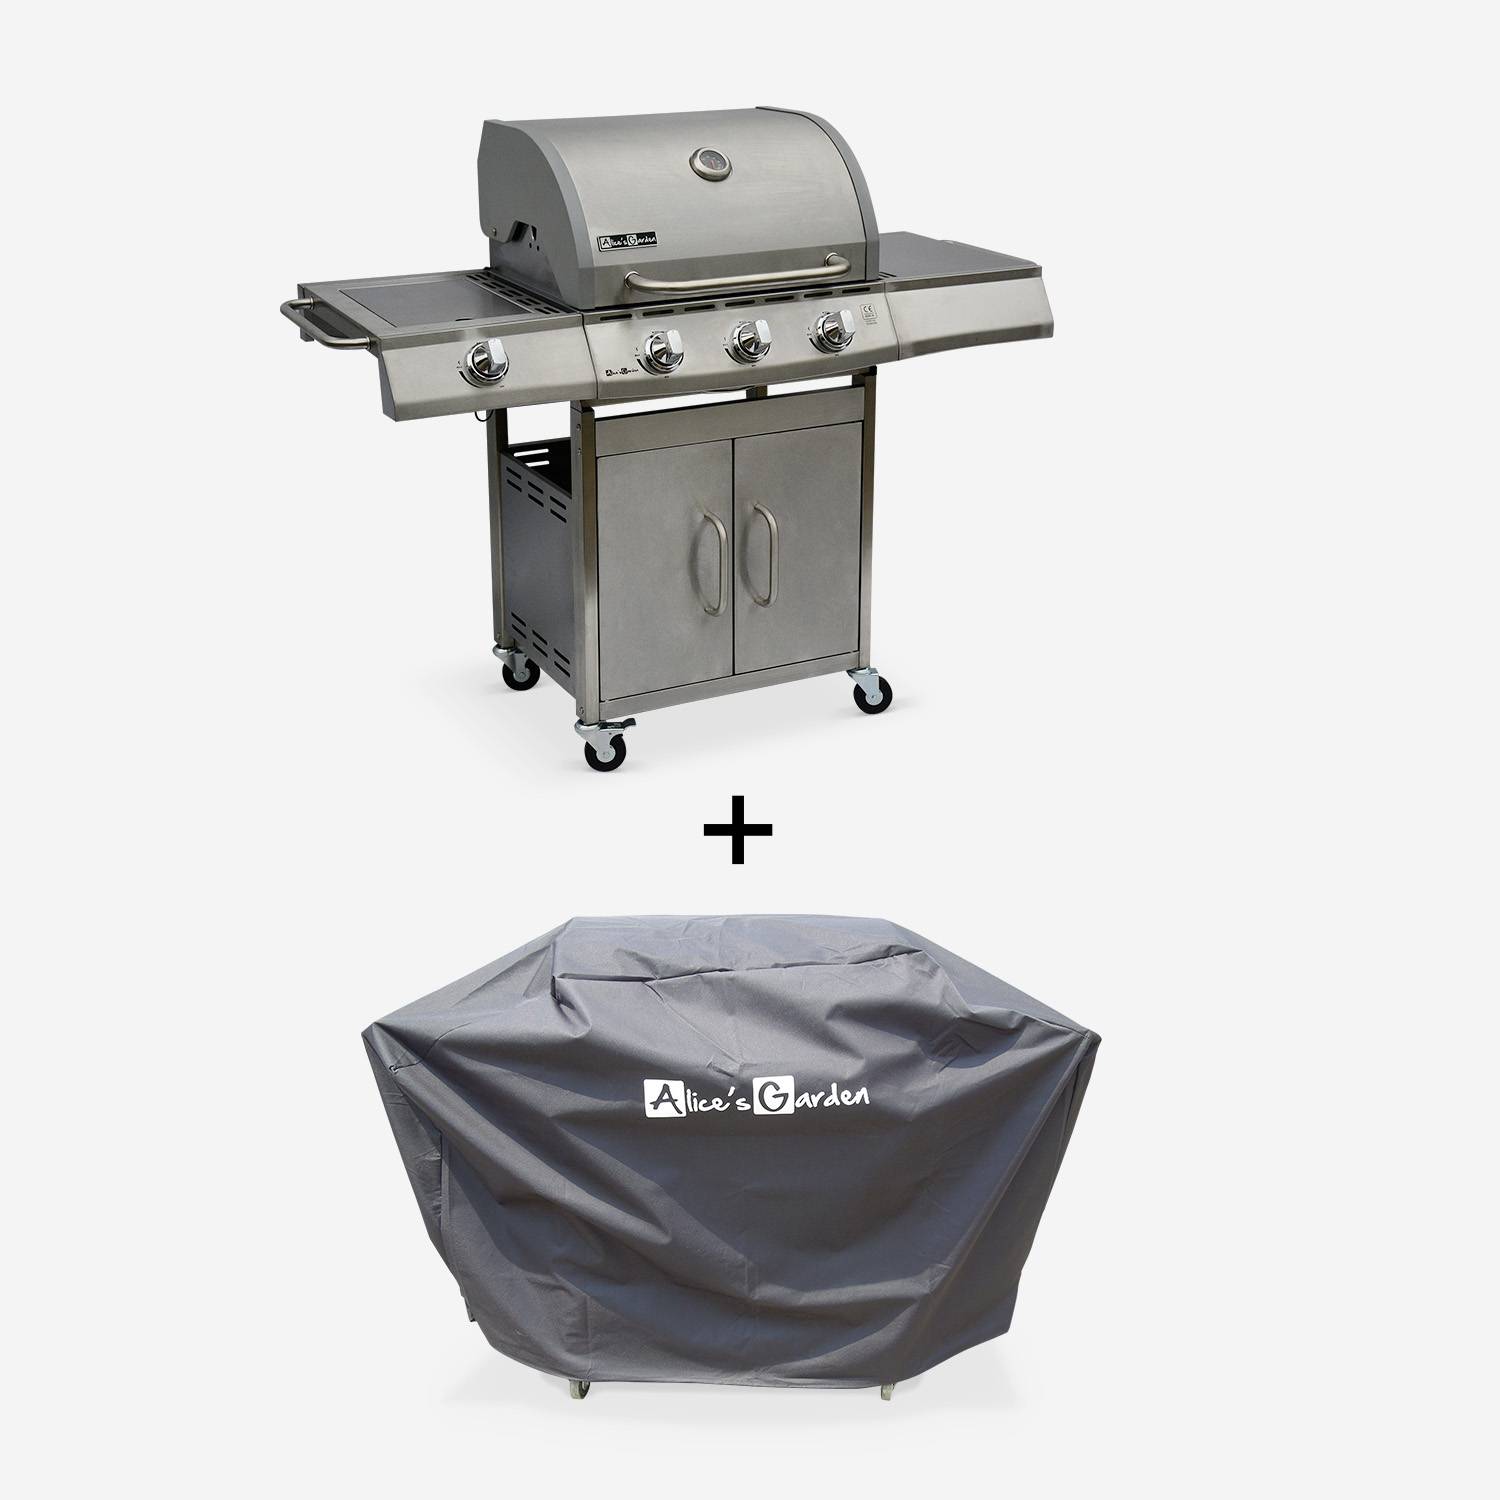 Barbecue gaz inox 14kW – Richelieu inox – Barbecue 4 brûleurs dont 1 feu latéral, côté grill et côté plancha, housse de protection incluse Photo1